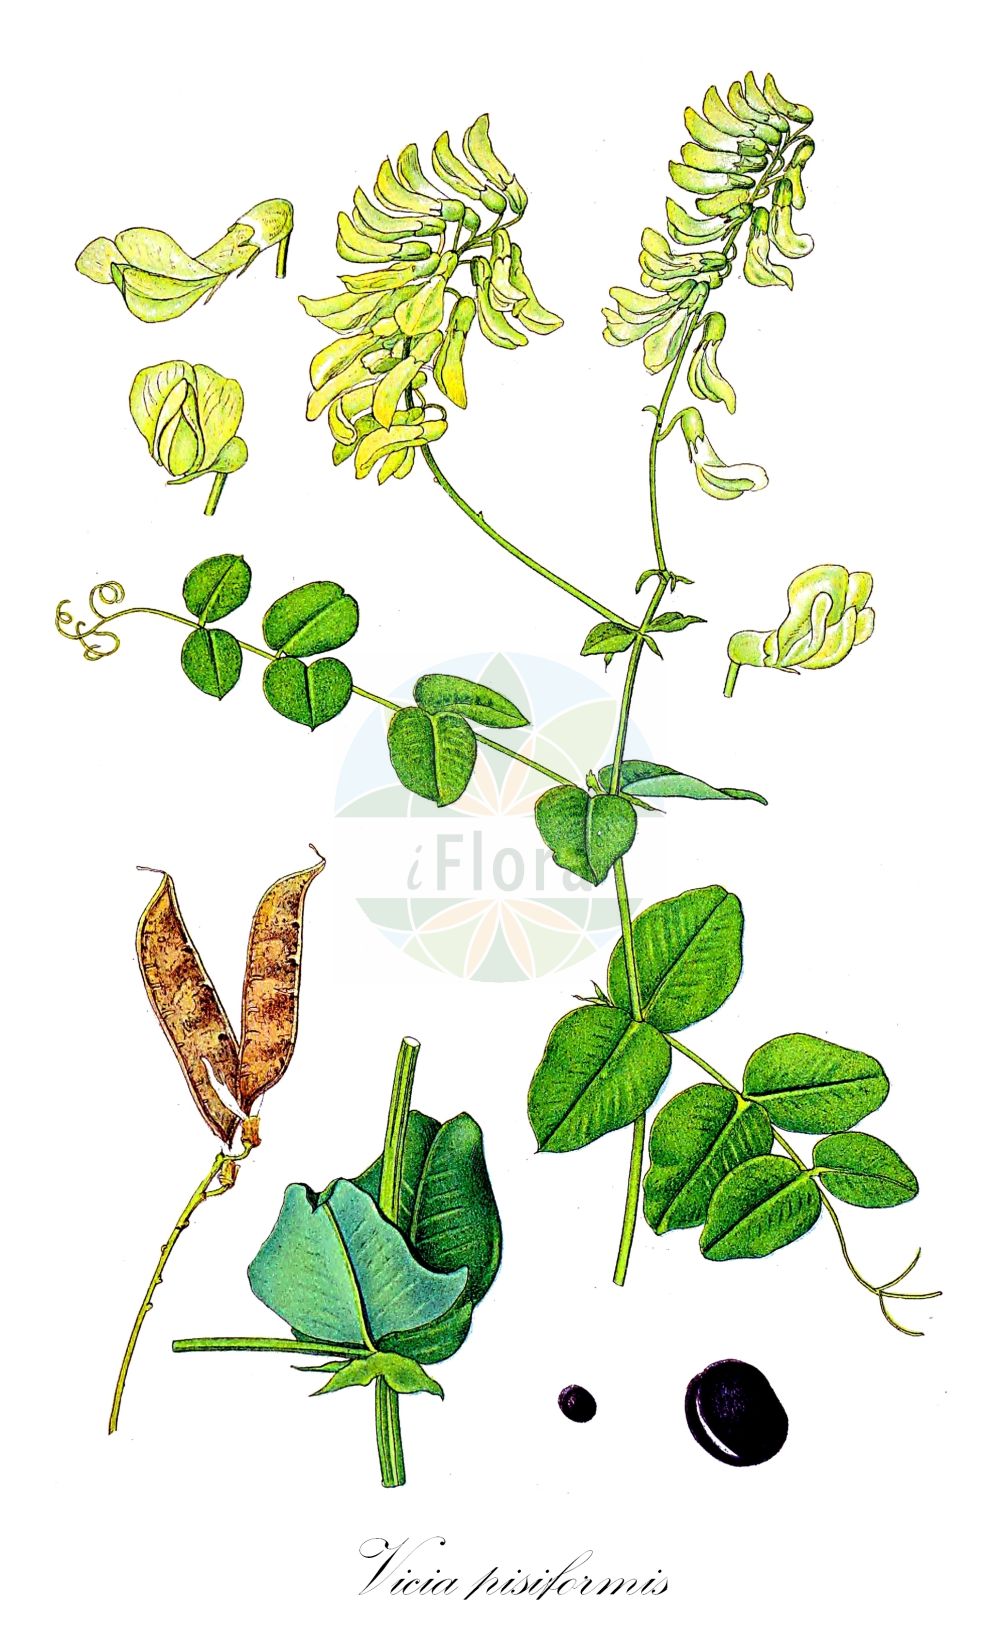 Historische Abbildung von Vicia pisiformis (Erbsen-Wicke - Pale-flower Vetch). Das Bild zeigt Blatt, Bluete, Frucht und Same. ---- Historical Drawing of Vicia pisiformis (Erbsen-Wicke - Pale-flower Vetch). The image is showing leaf, flower, fruit and seed.(Vicia pisiformis,Erbsen-Wicke,Pale-flower Vetch,Ervum pisiforme,Vicia pisiformis,Erbsen-Wicke,Pale-flower Vetch,Pale-flowered Vetch,Pea-shaped Vetch,Pea Vetch,Vicia,Wicke,Vetch,Fabaceae,Schmetterlingsblütler,Pea family,Blatt,Bluete,Frucht,Same,leaf,flower,fruit,seed,Lindman (1901-1905))